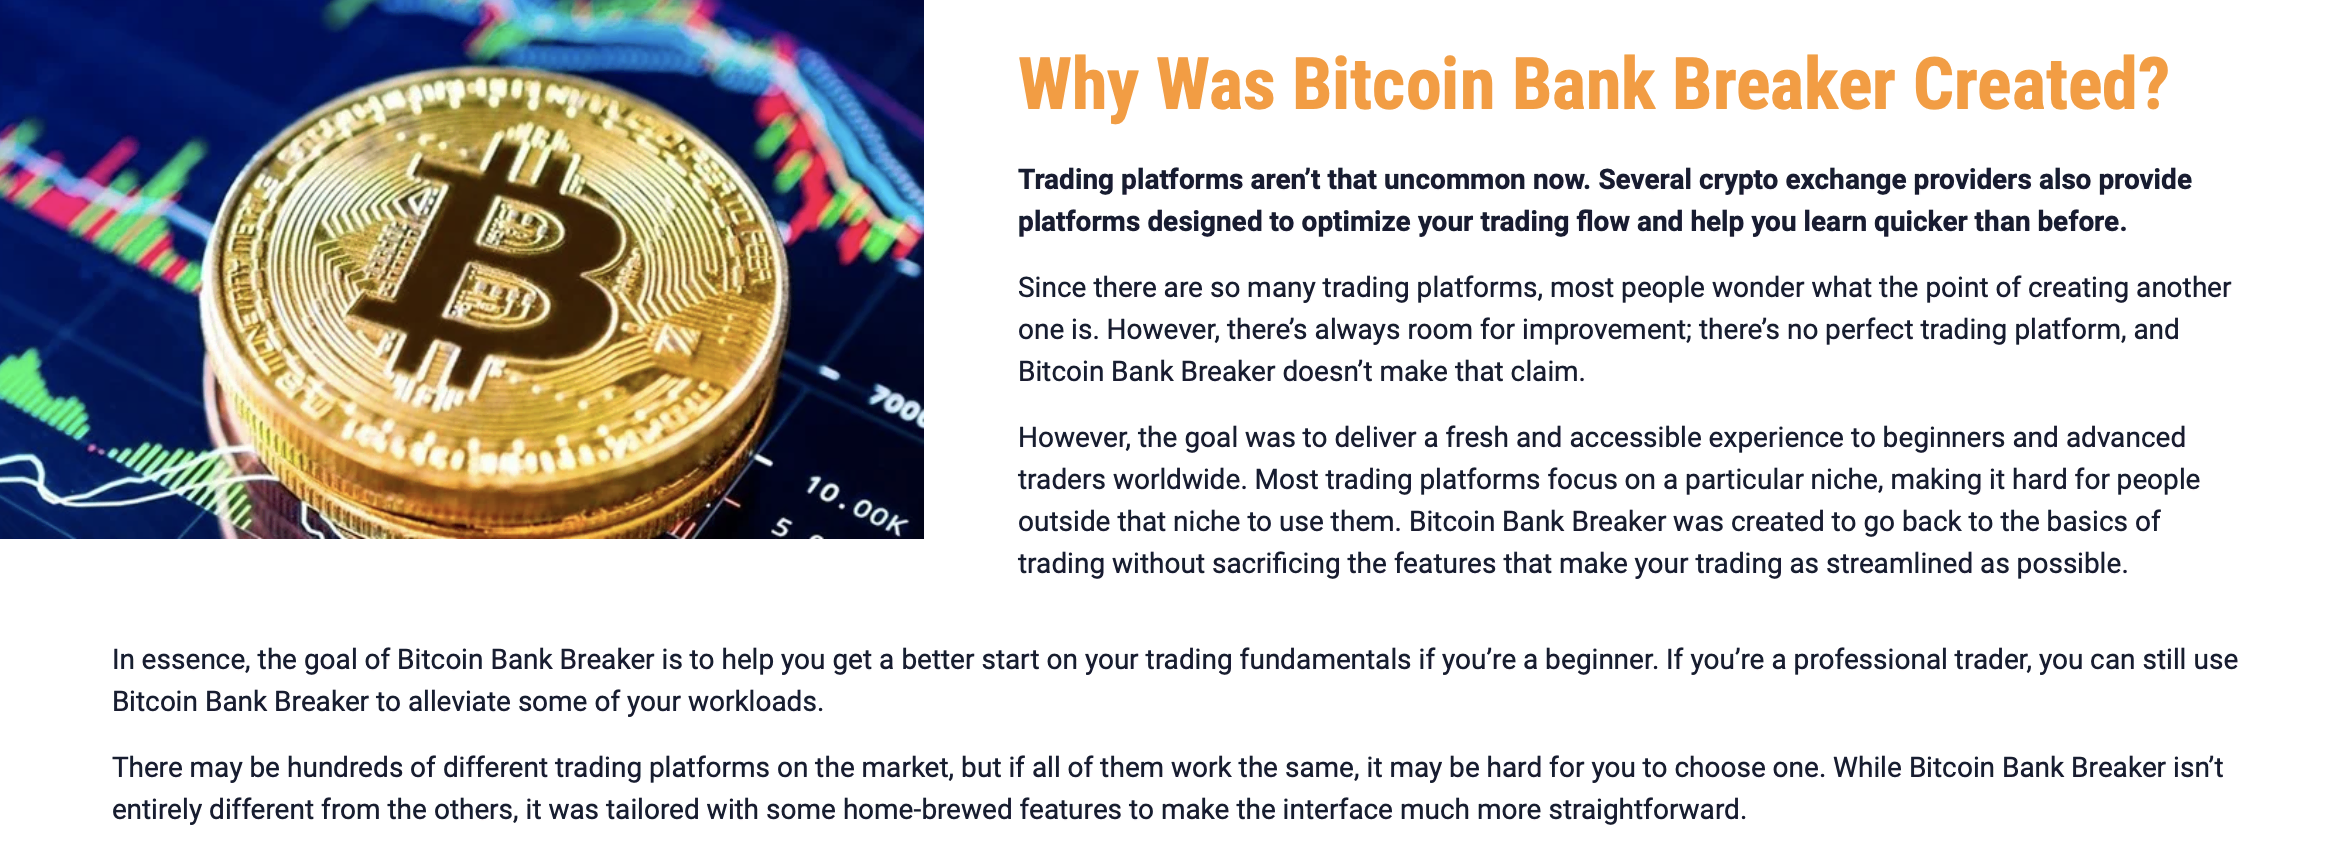 لماذا تم إنشاء Bitcoin Bank Breaker